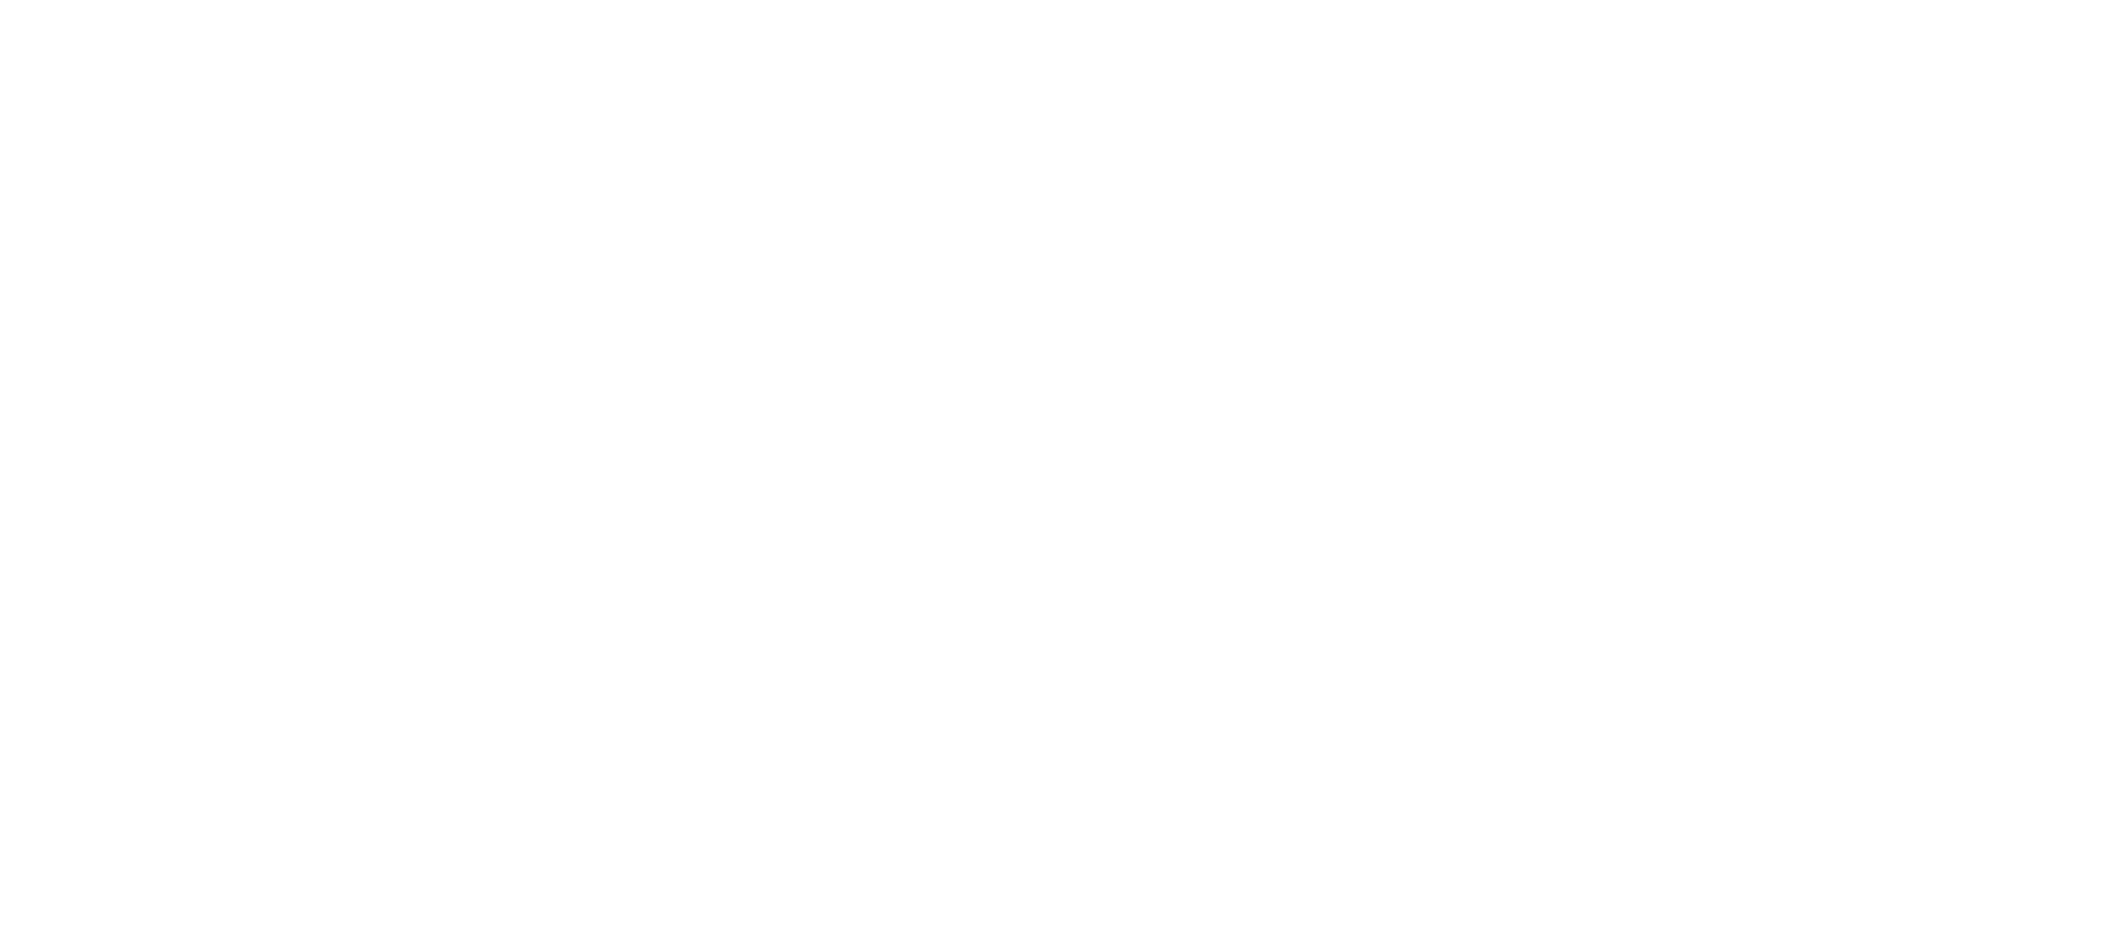  Rochestown Park Hotel